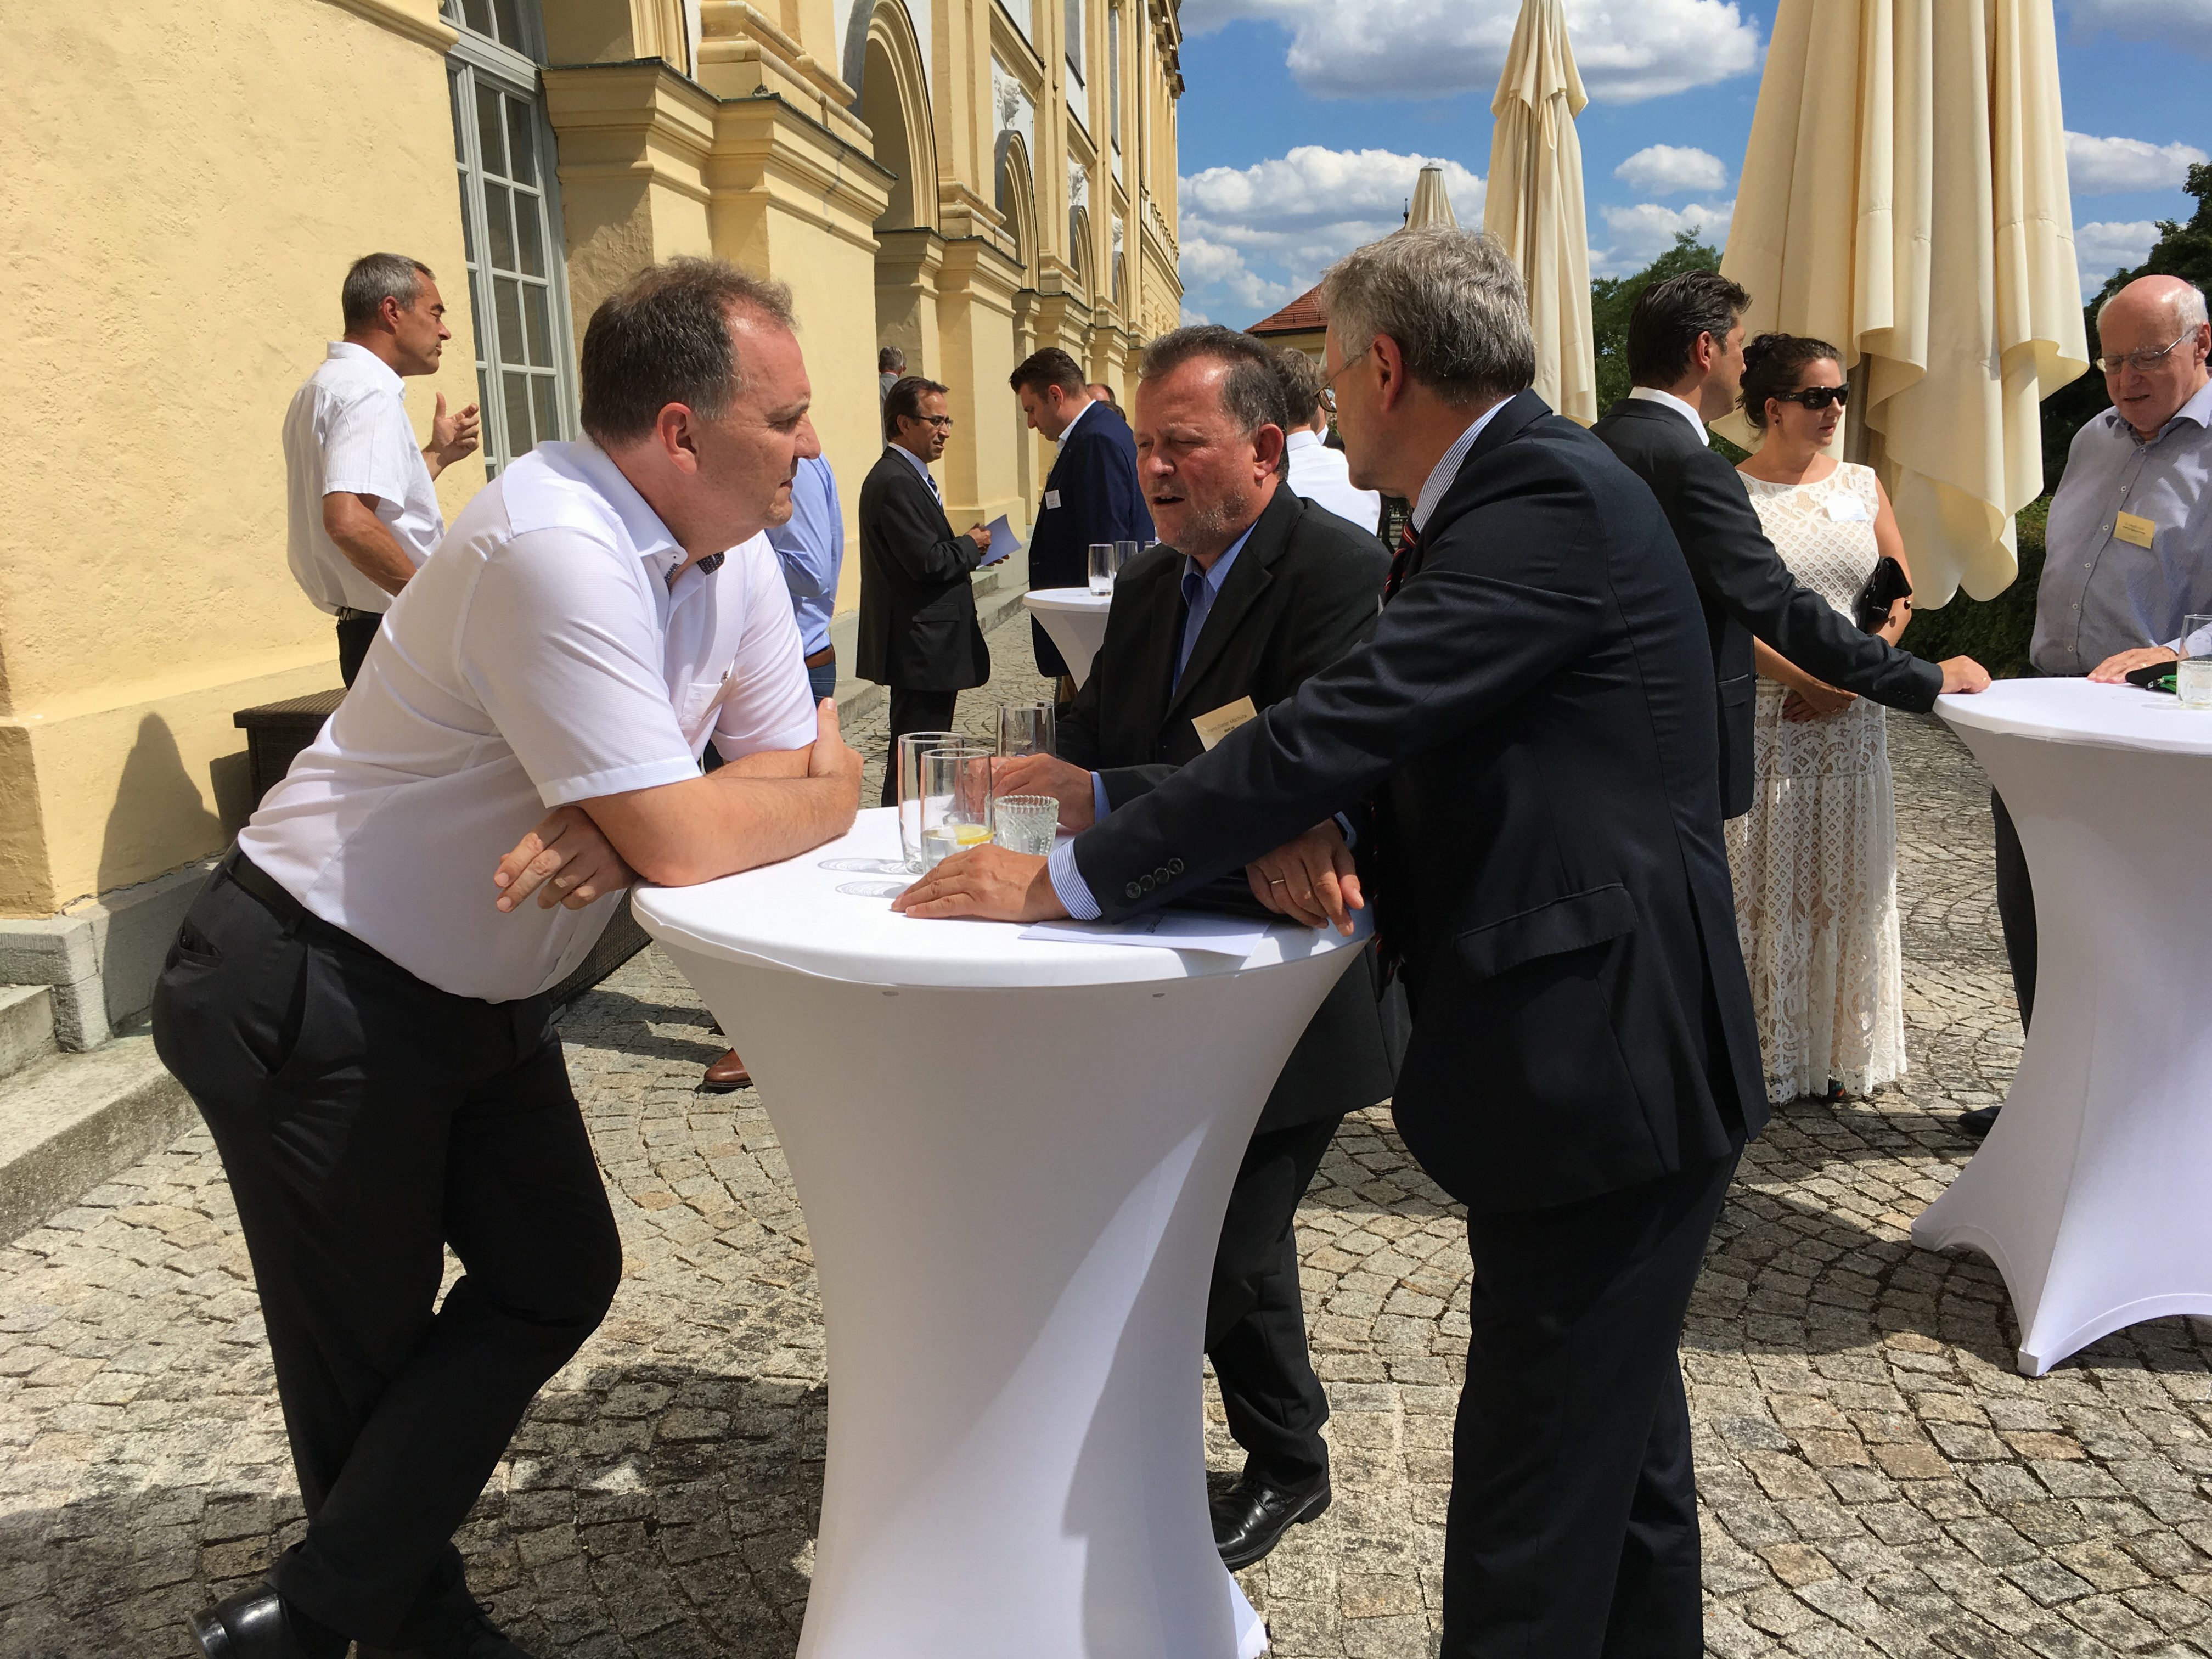 commendIT Forum für Unternehmenslenker, Schlos Dachau 4. Juli 2017